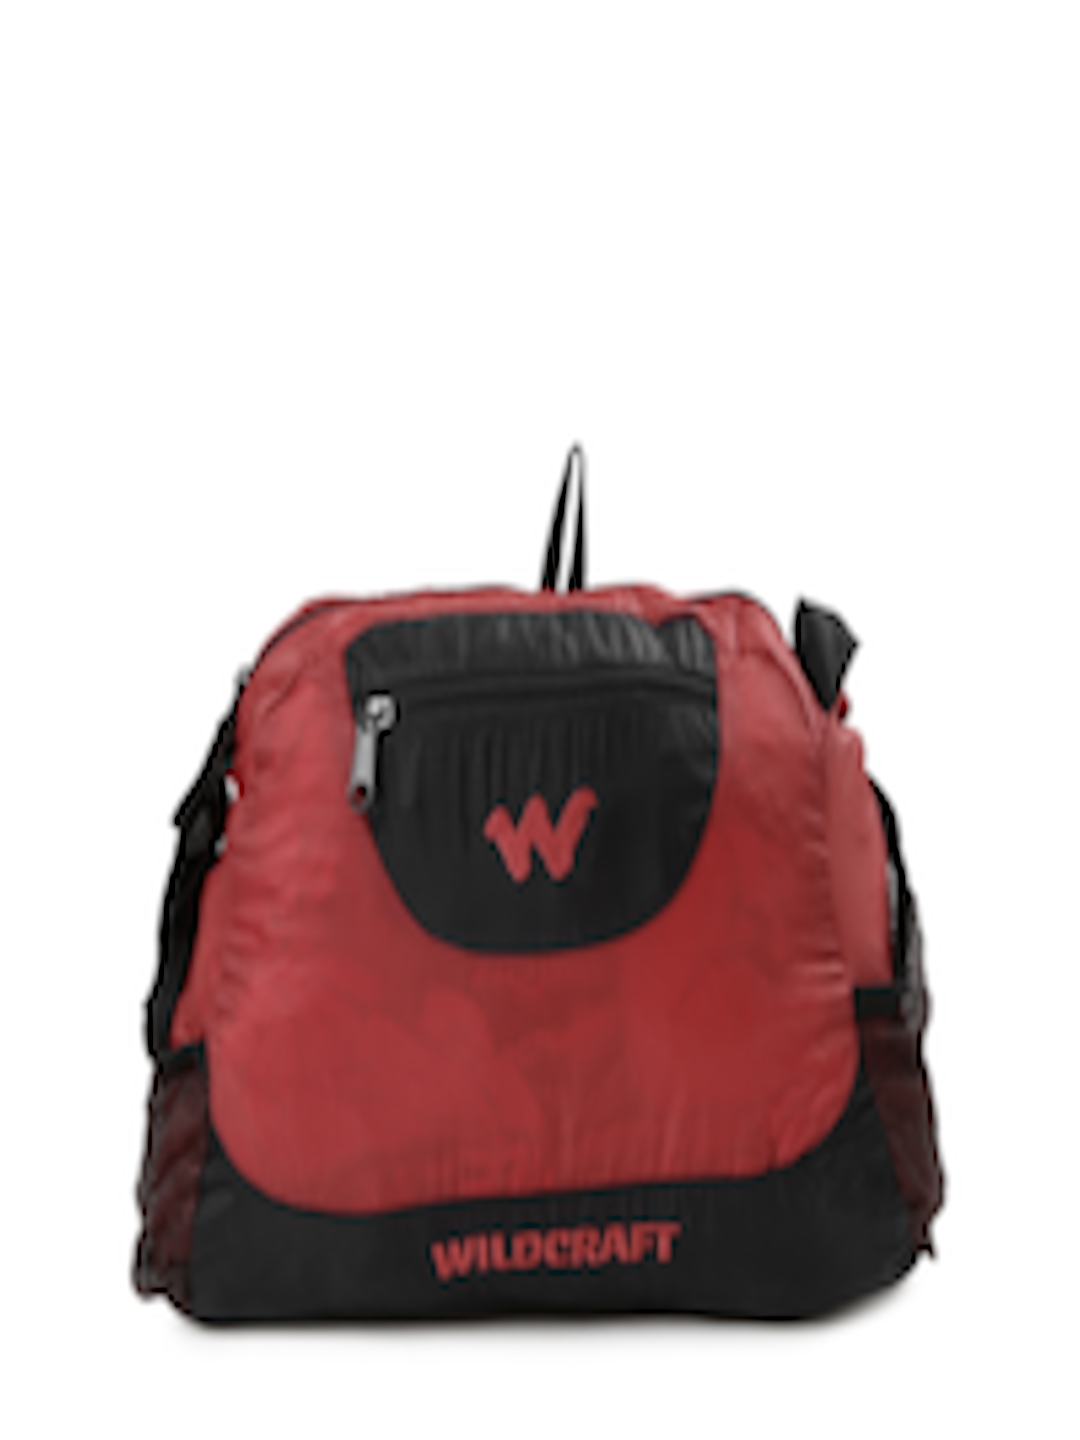 Buy Wildcraft Men Red amp Black Foldable Messenger Bag Messenger Bag 